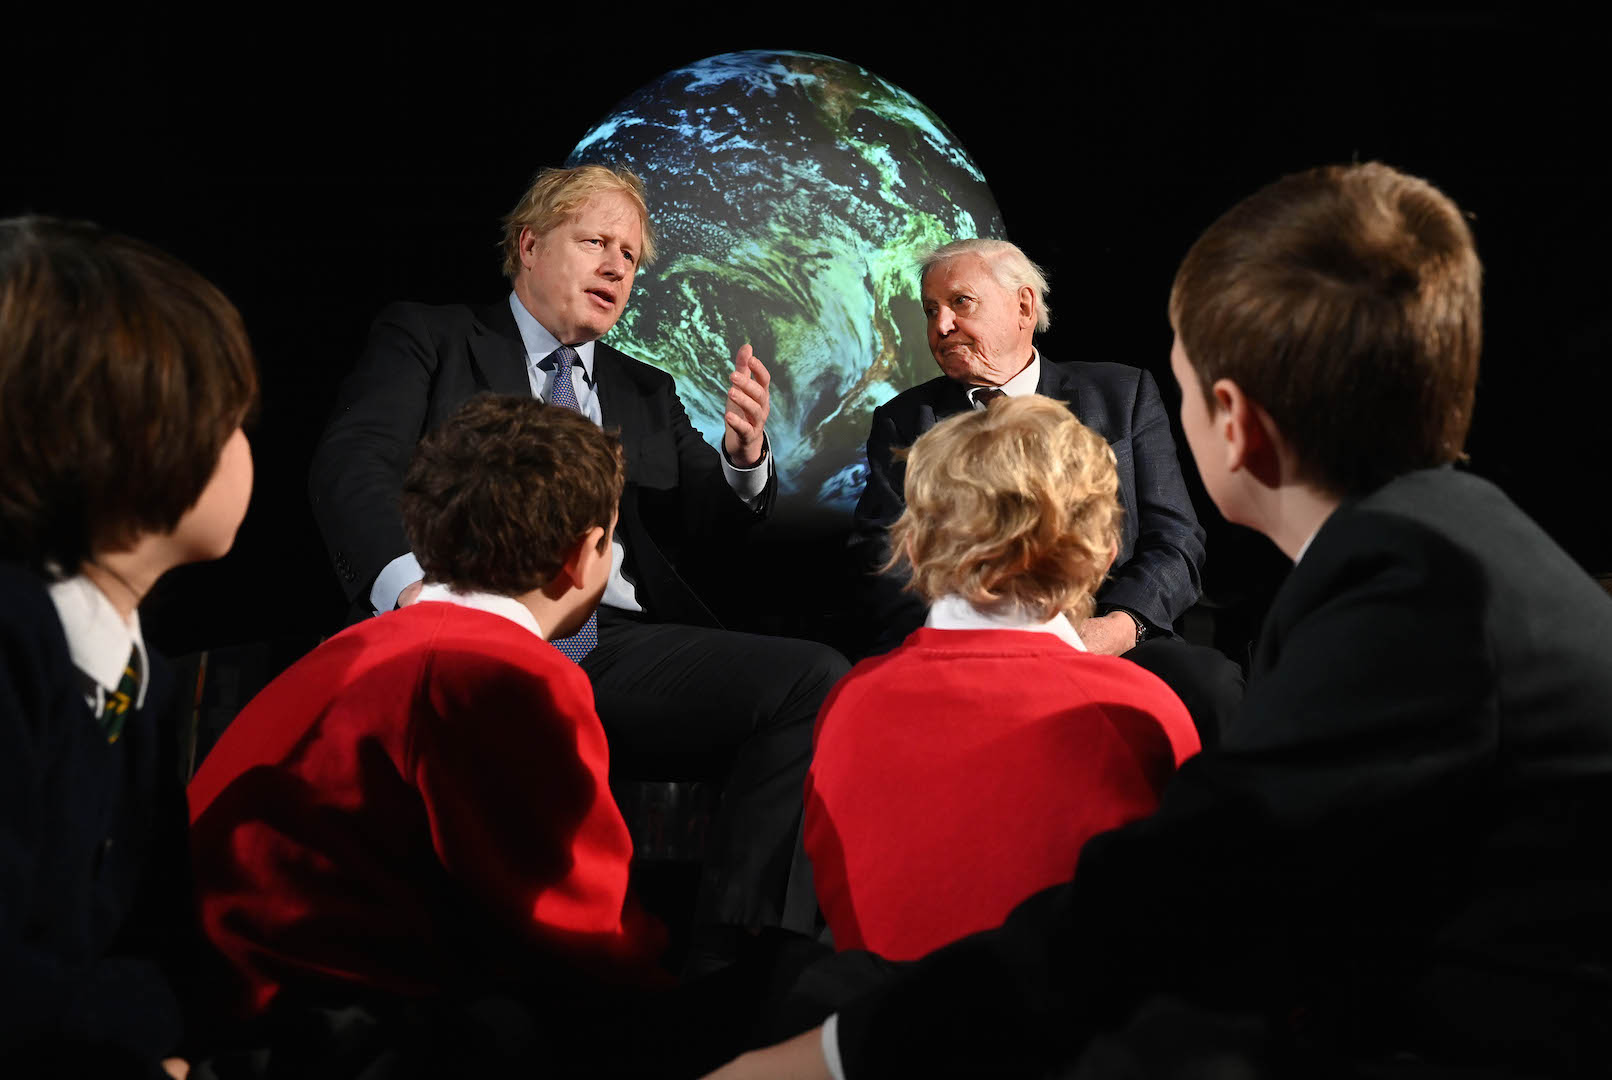 <p>O primeiro-ministro do Reino Unido, Boris Johnson, e o naturalista Sir David Attenborough, no lançamento das negociações sobre mudanças climáticas da COP26, que estão em risco devido ao coronavírus (imagem: <a href="https://www.flickr.com/photos/number10gov/49487770707/in/photostream/">Andrew Parsons / No10 Downing Street</a>)</p>